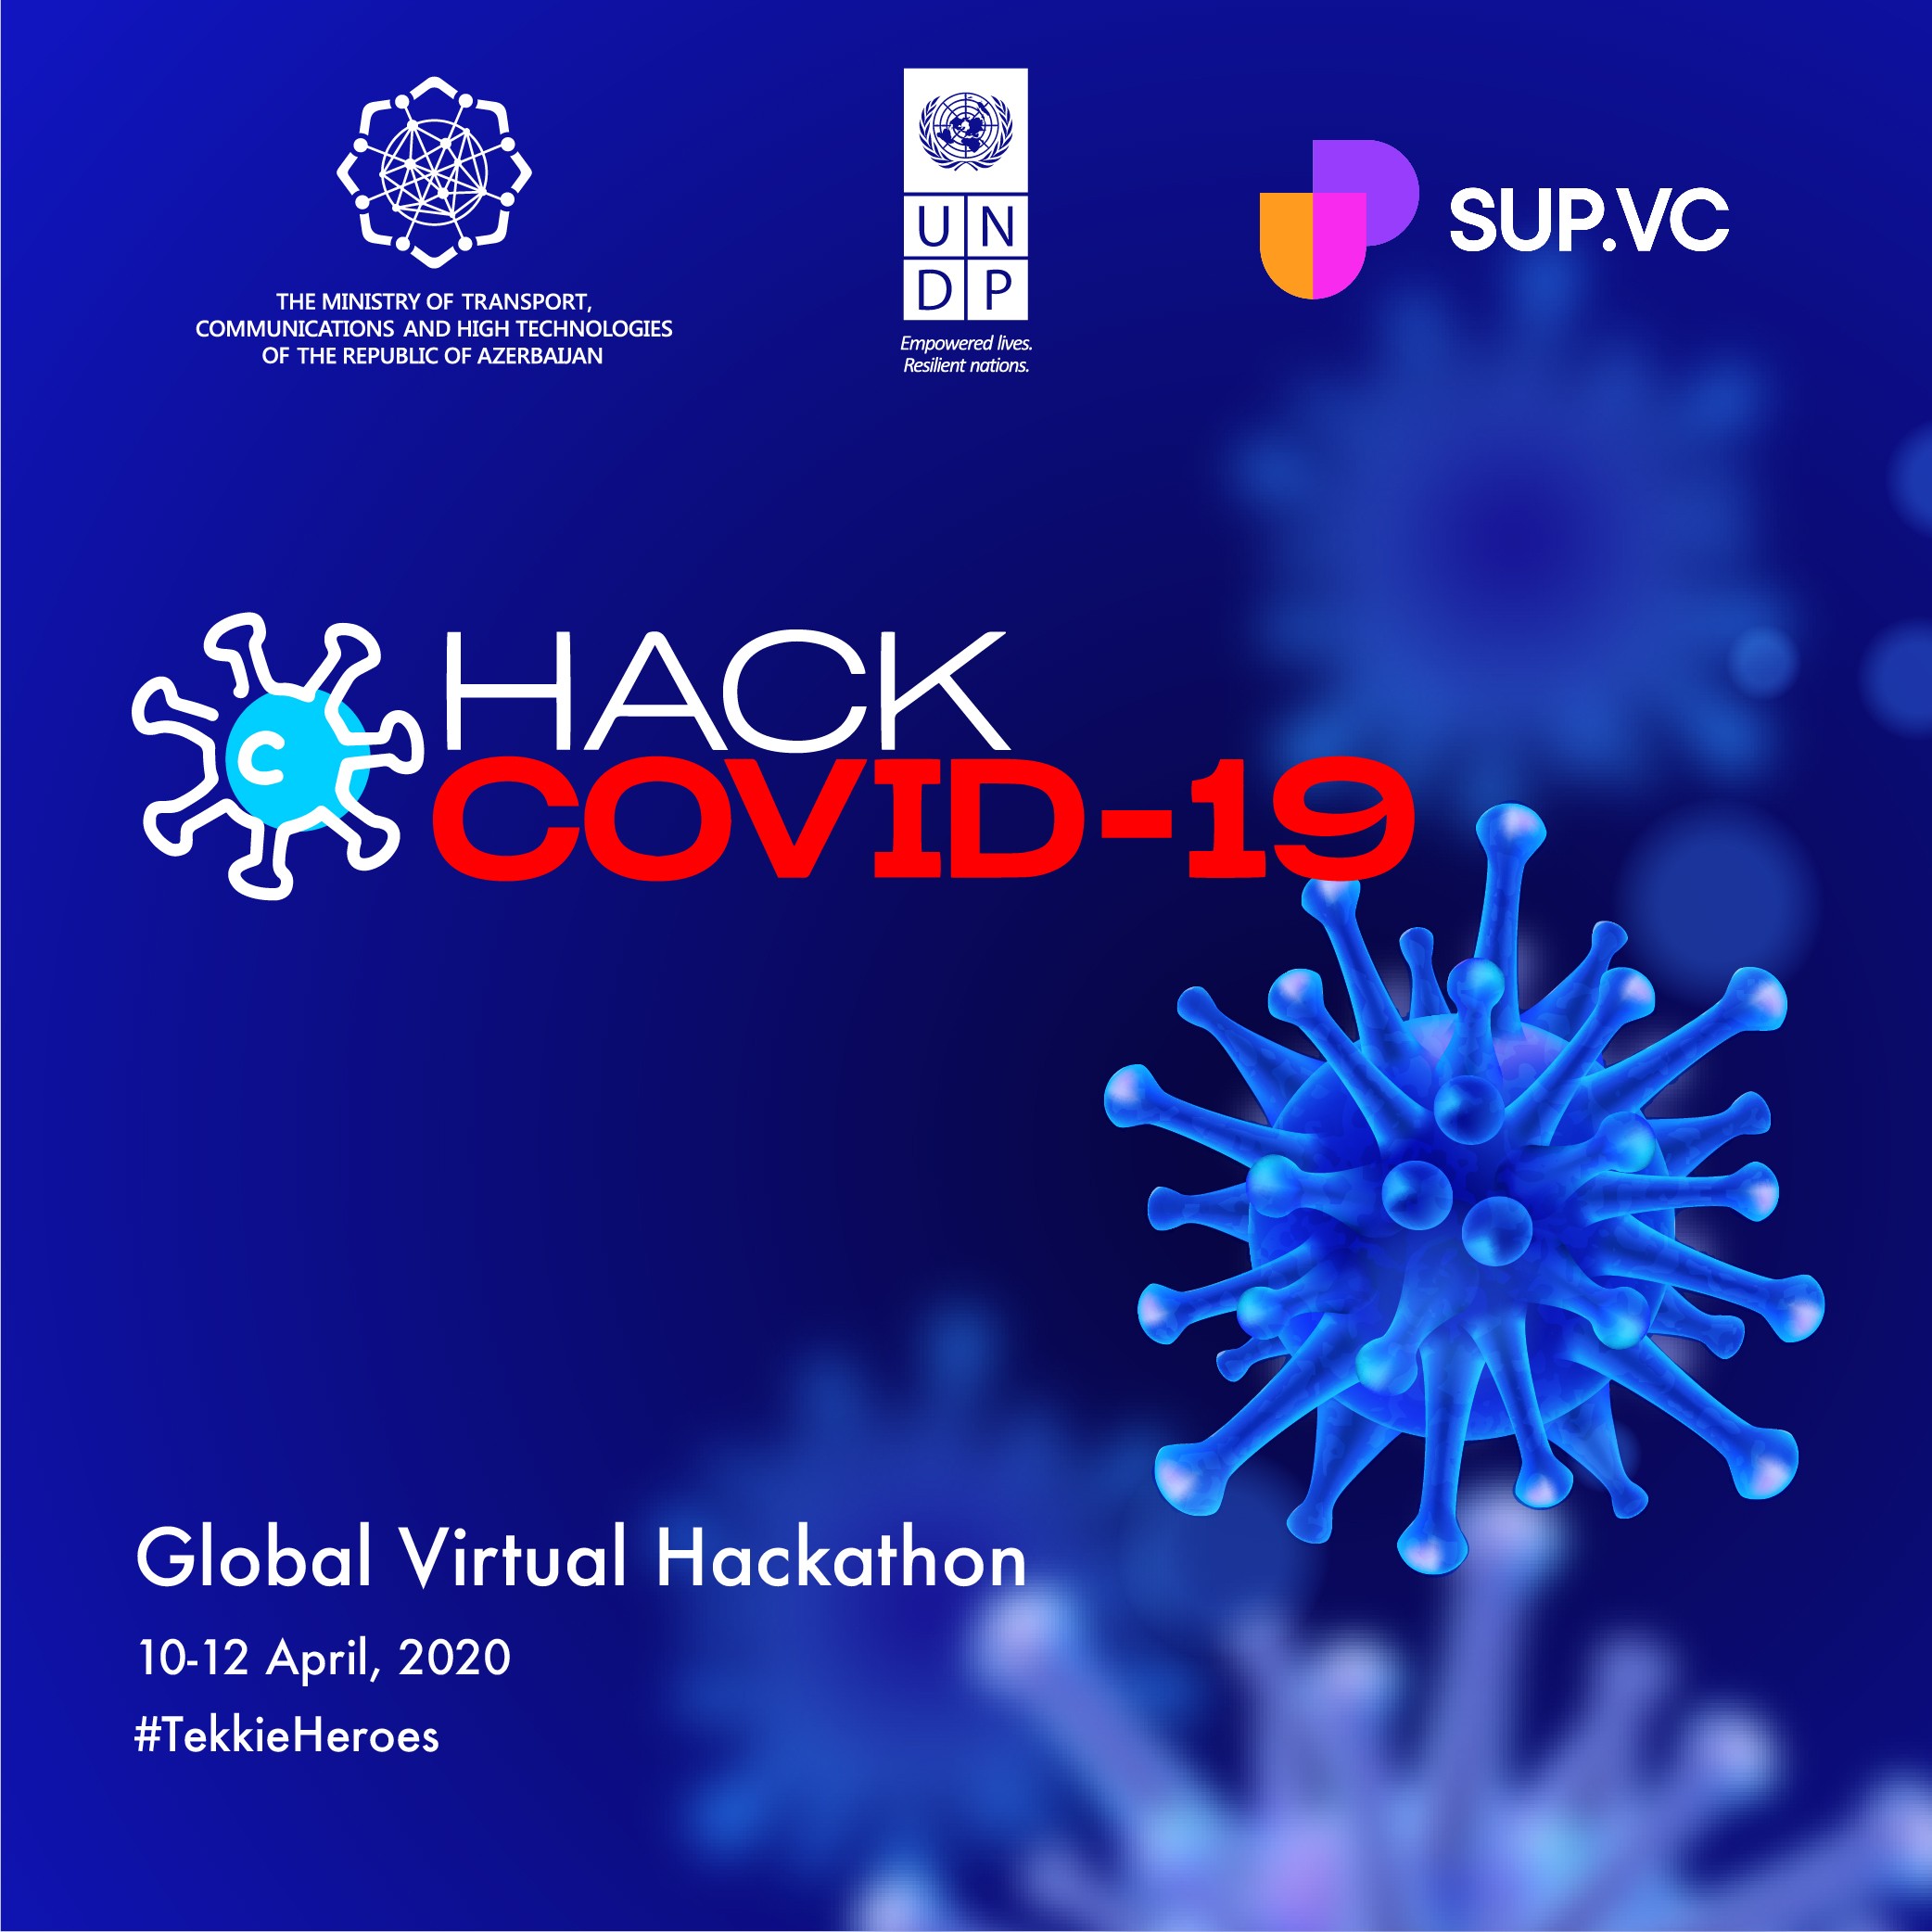 Koronavirusa qarşı texnoloji həlləri bir araya gətirən “virtual hackathon”a qeydiyyat başlayıb